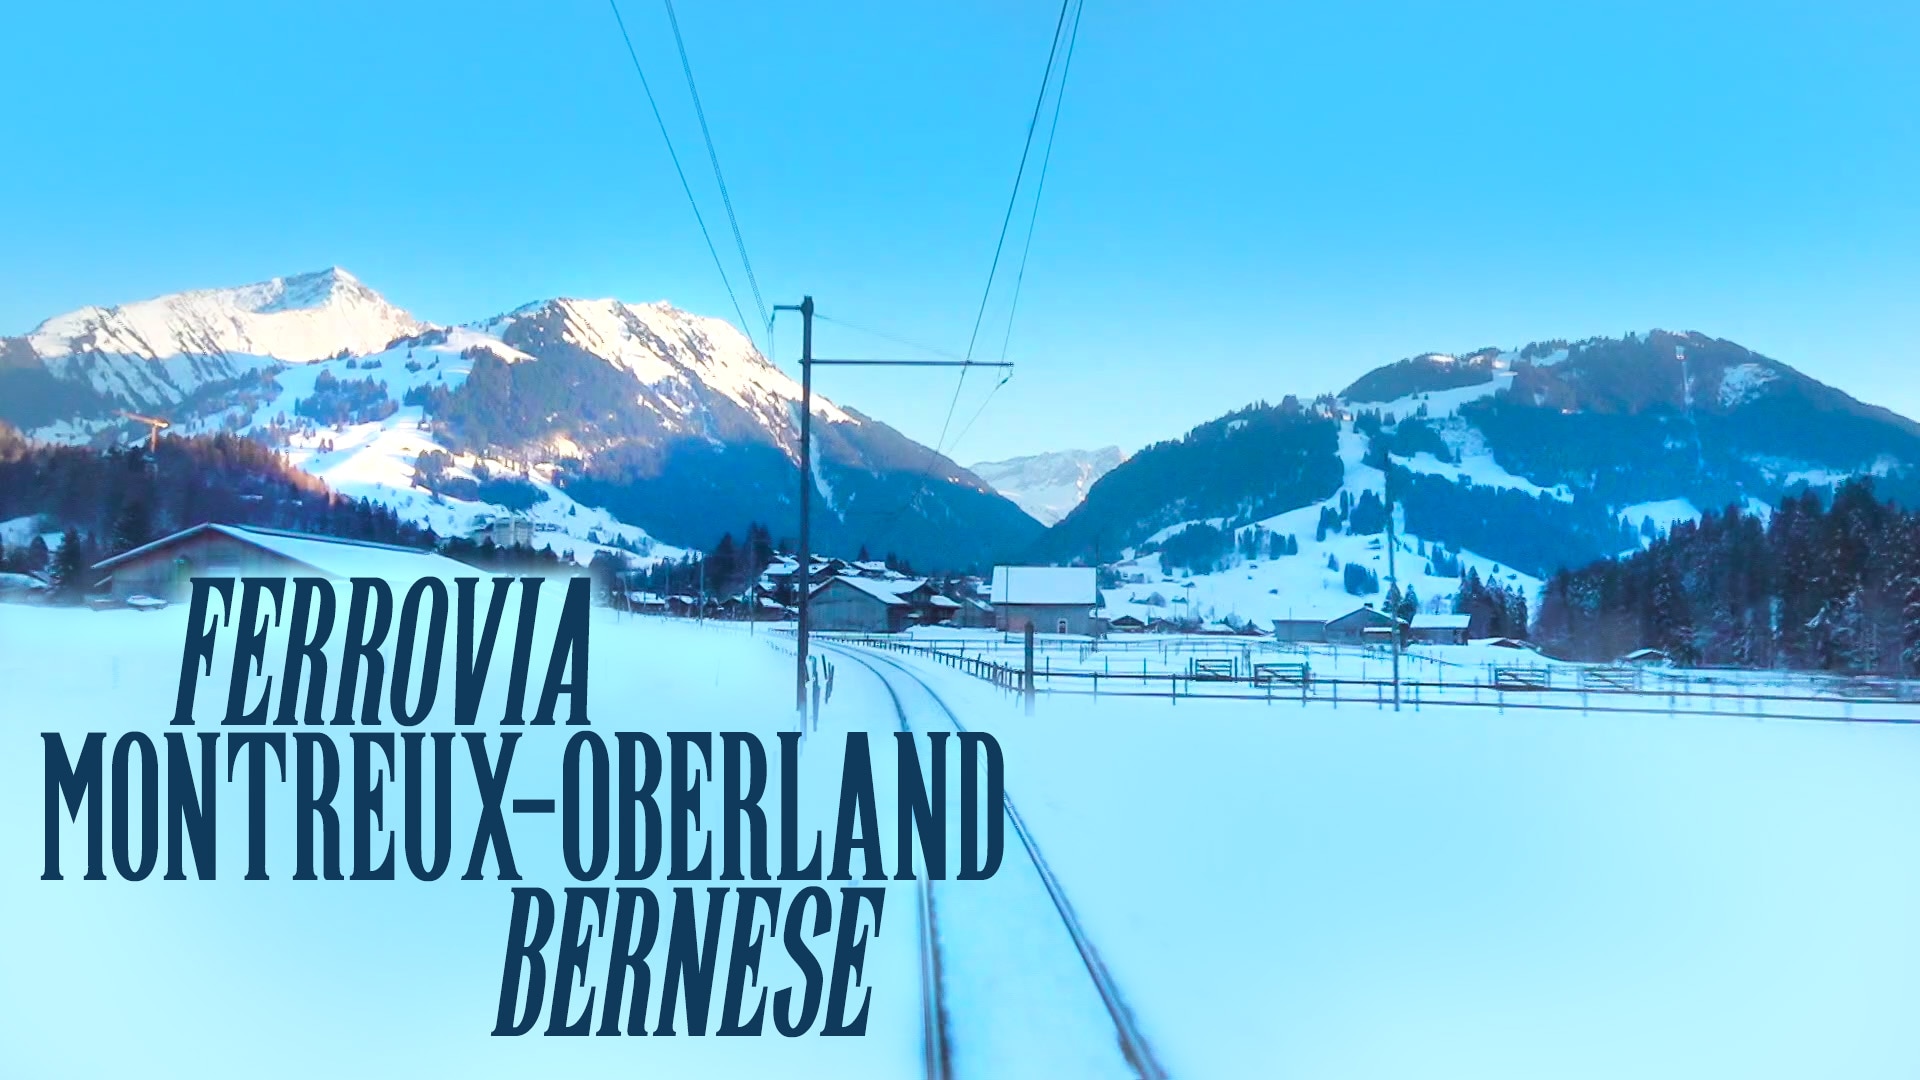 Ferrovia Montreux-Oberland bernese